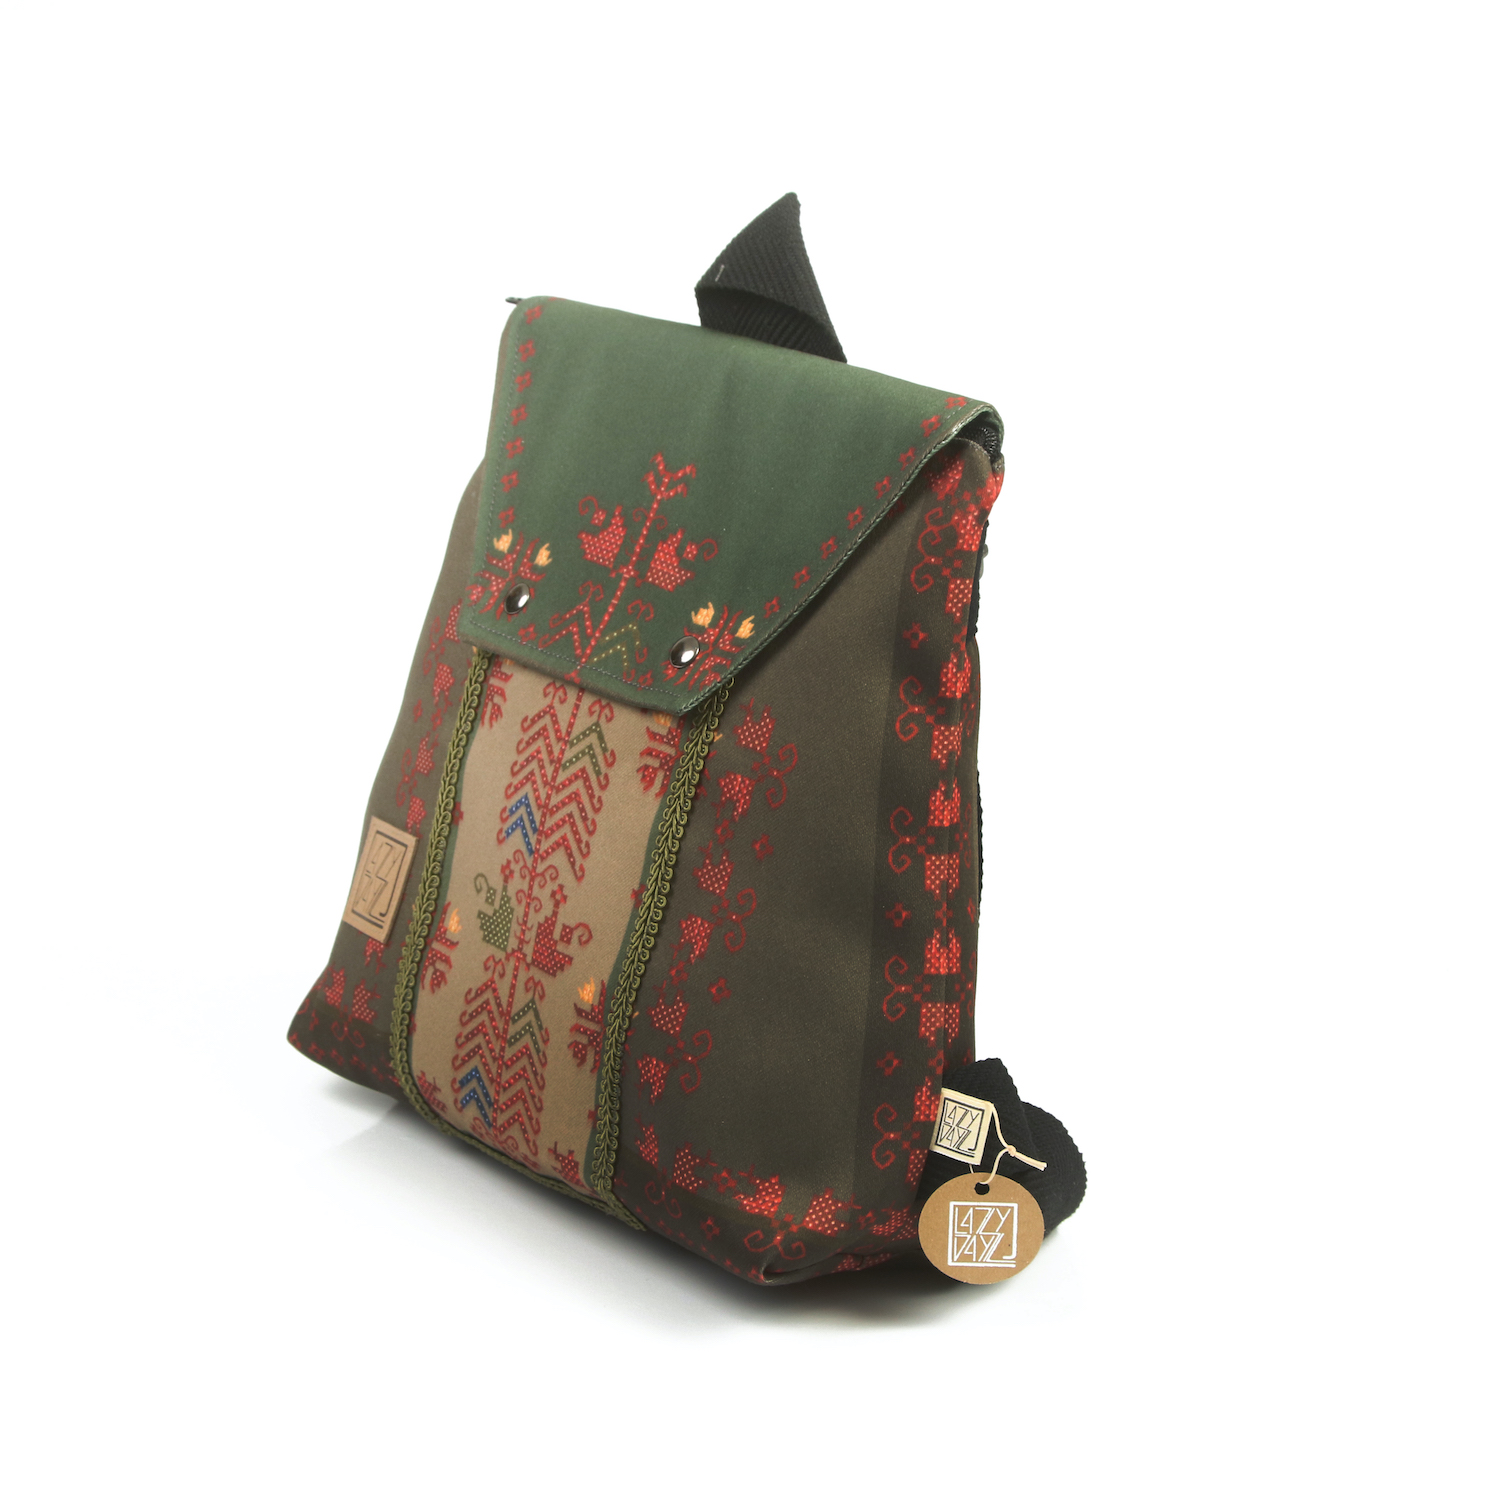 LazyDayz Designs Backpack γυναικείος σάκος πλάτης χειροποίητος bb0308b